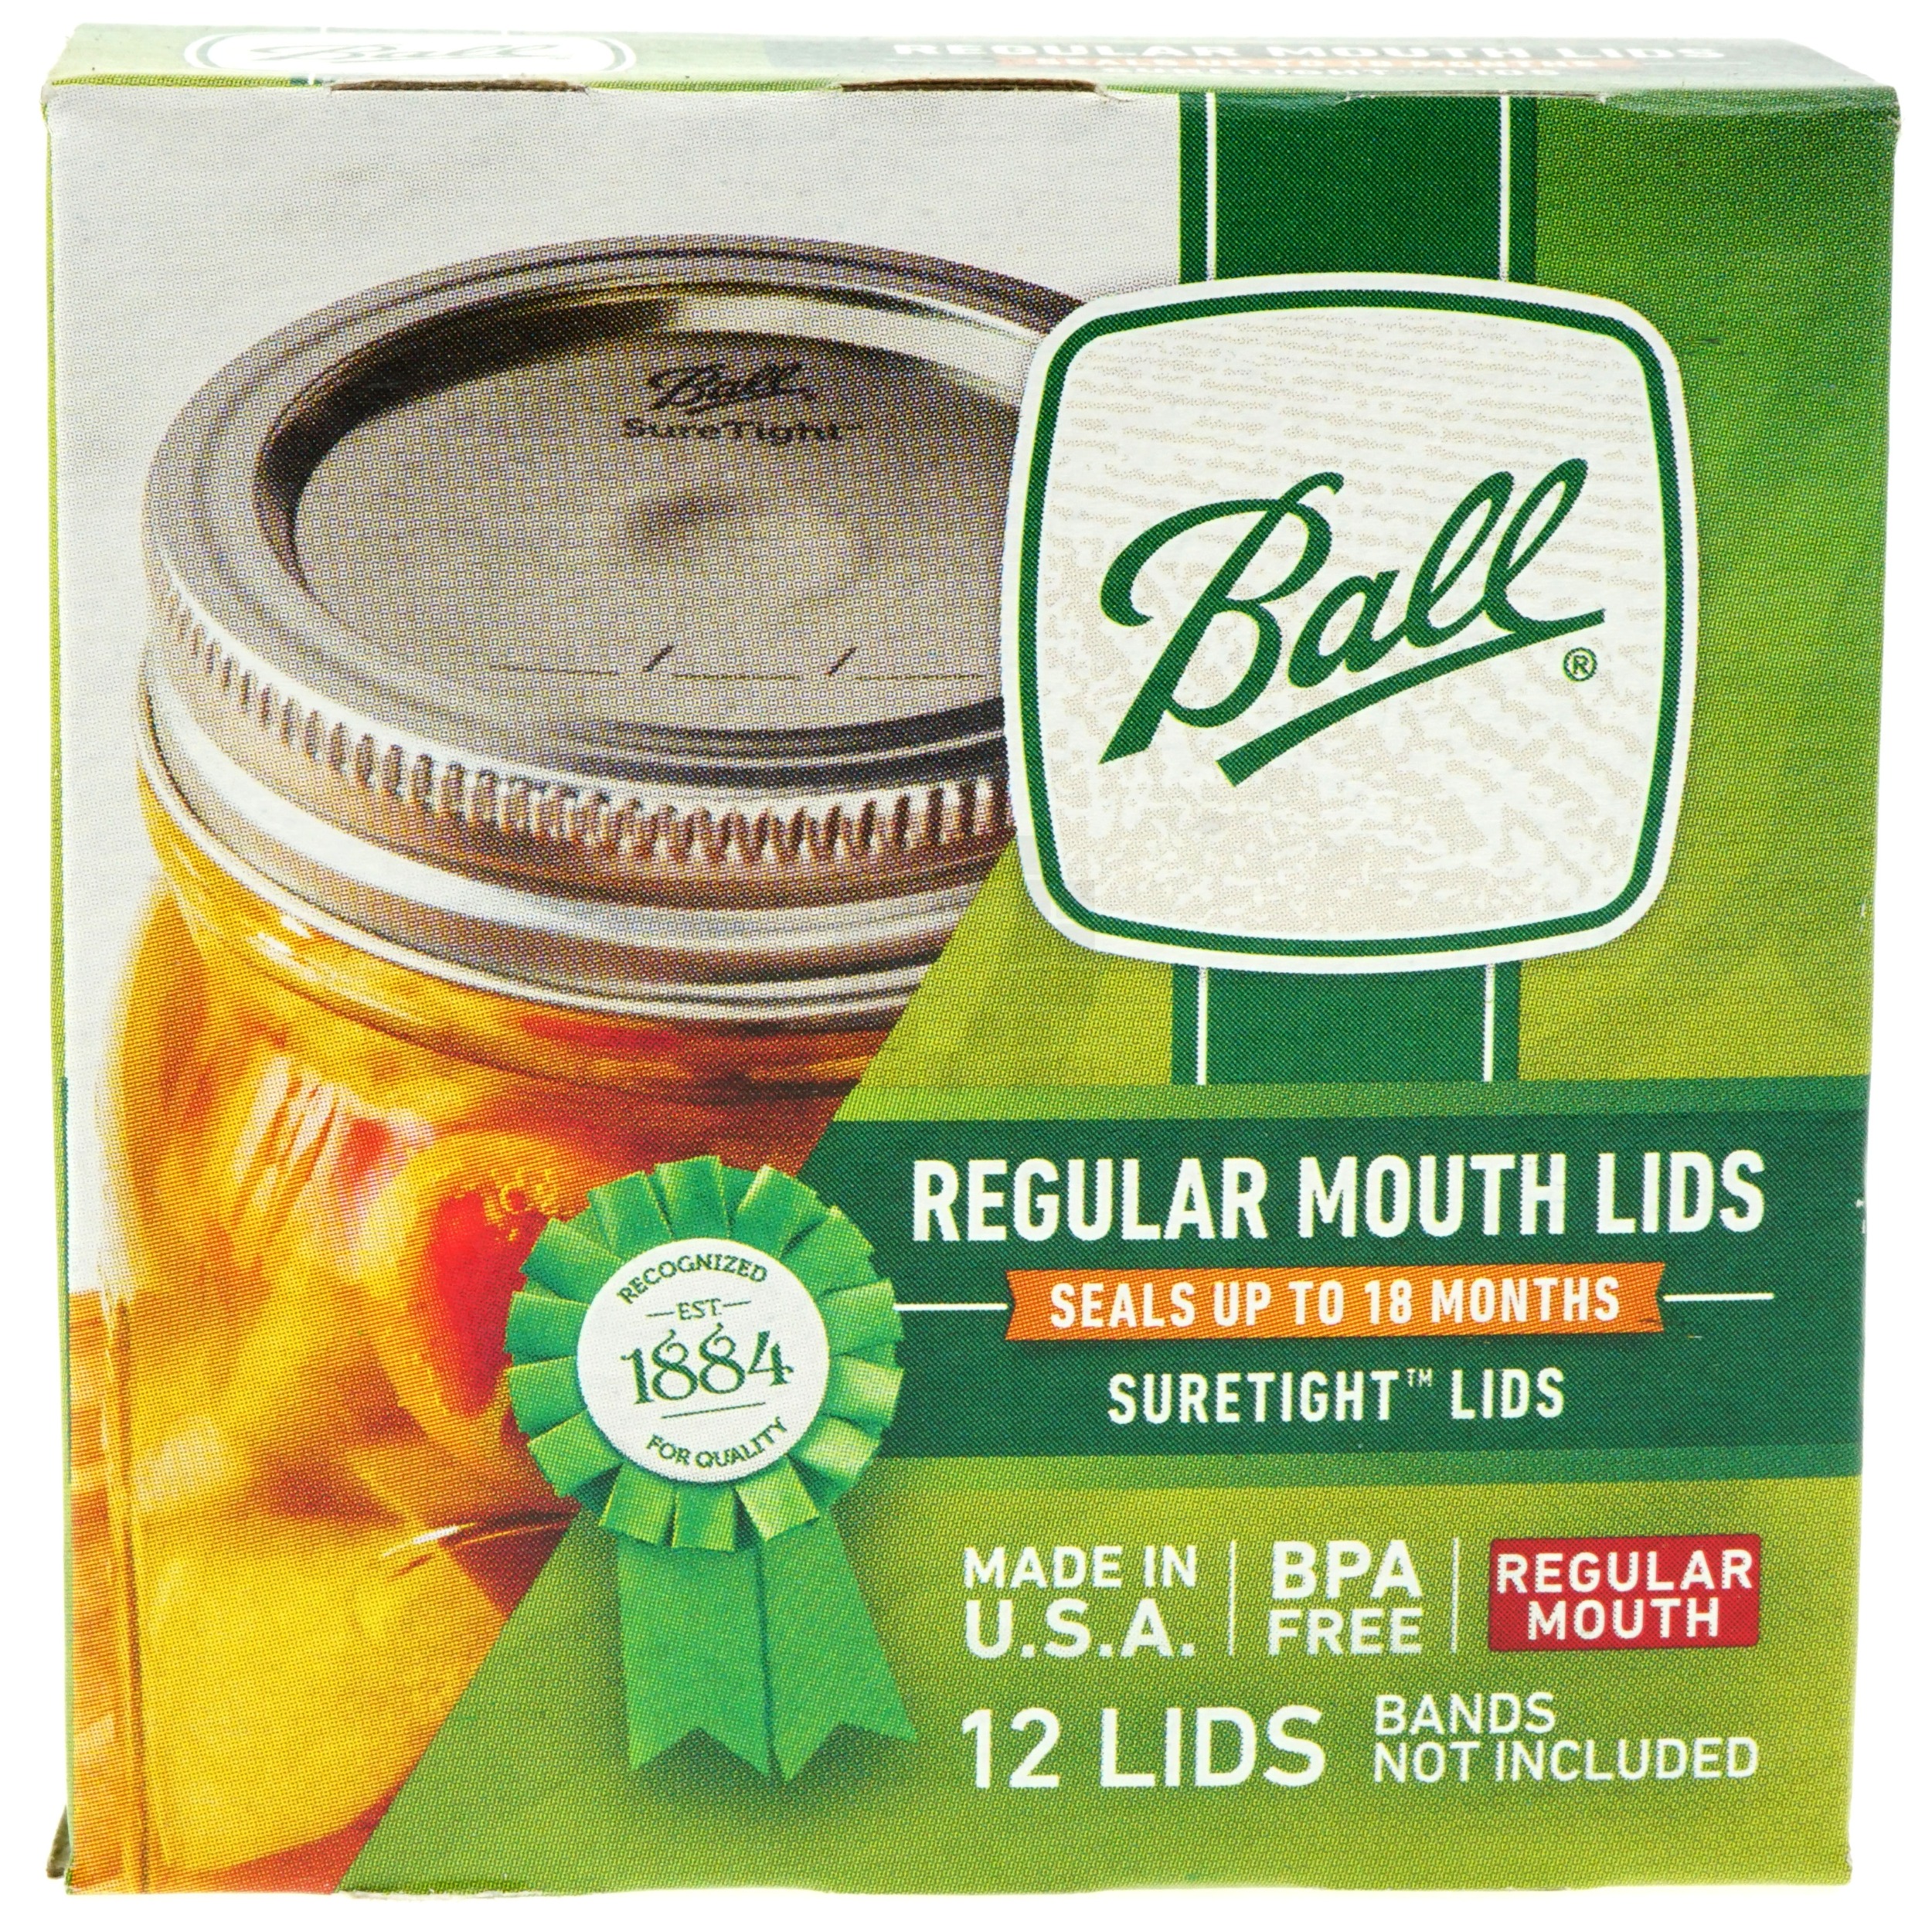 Ball 31000 Regular Mouth Jar Lids - 1 Pack of 12 Lids